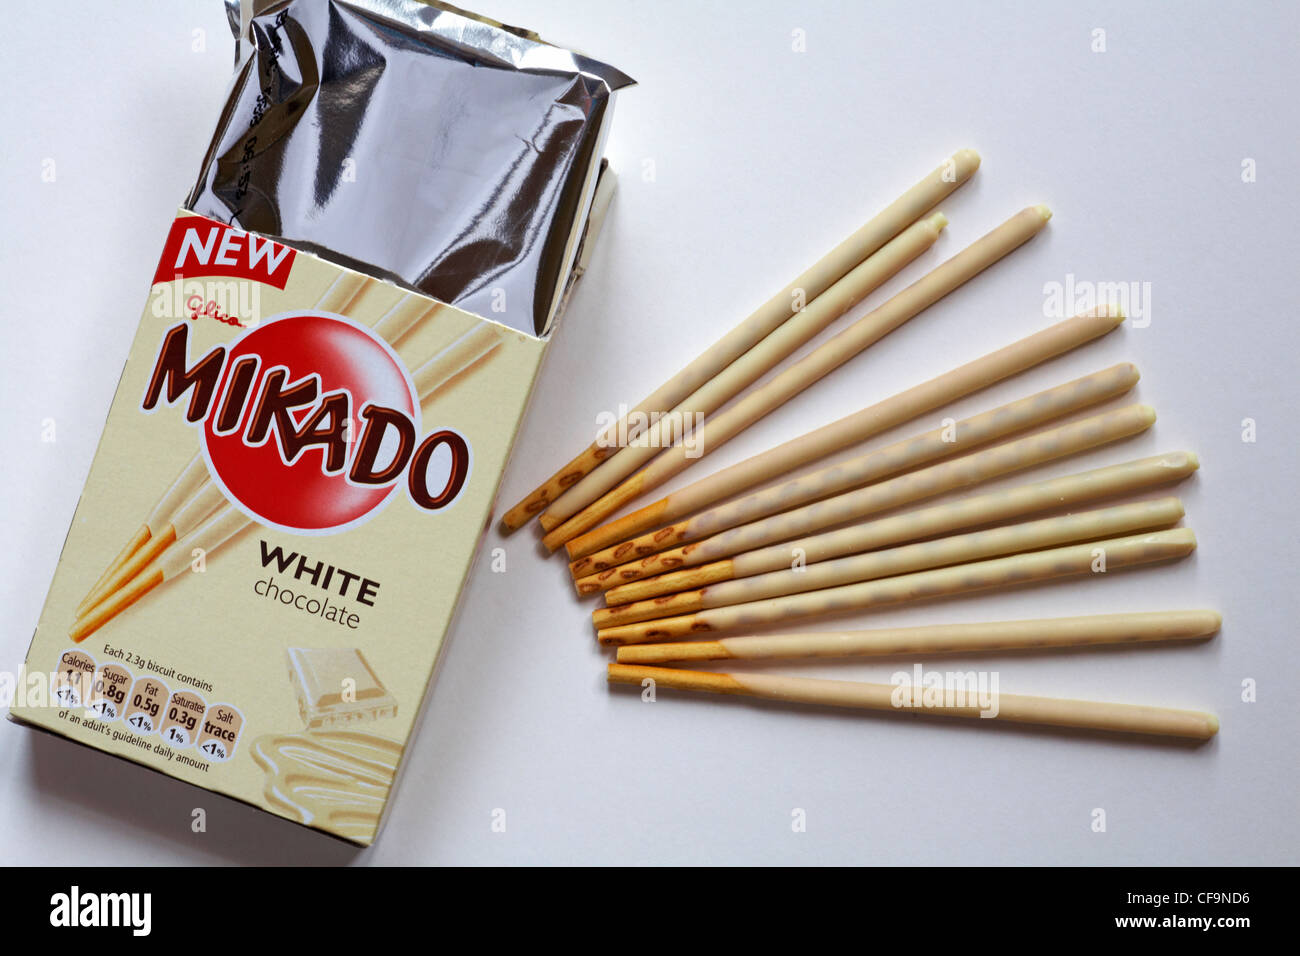 box of new Glico Mikado white chocolate opened to show contents set on white background - Mikado sticks Stock Photo